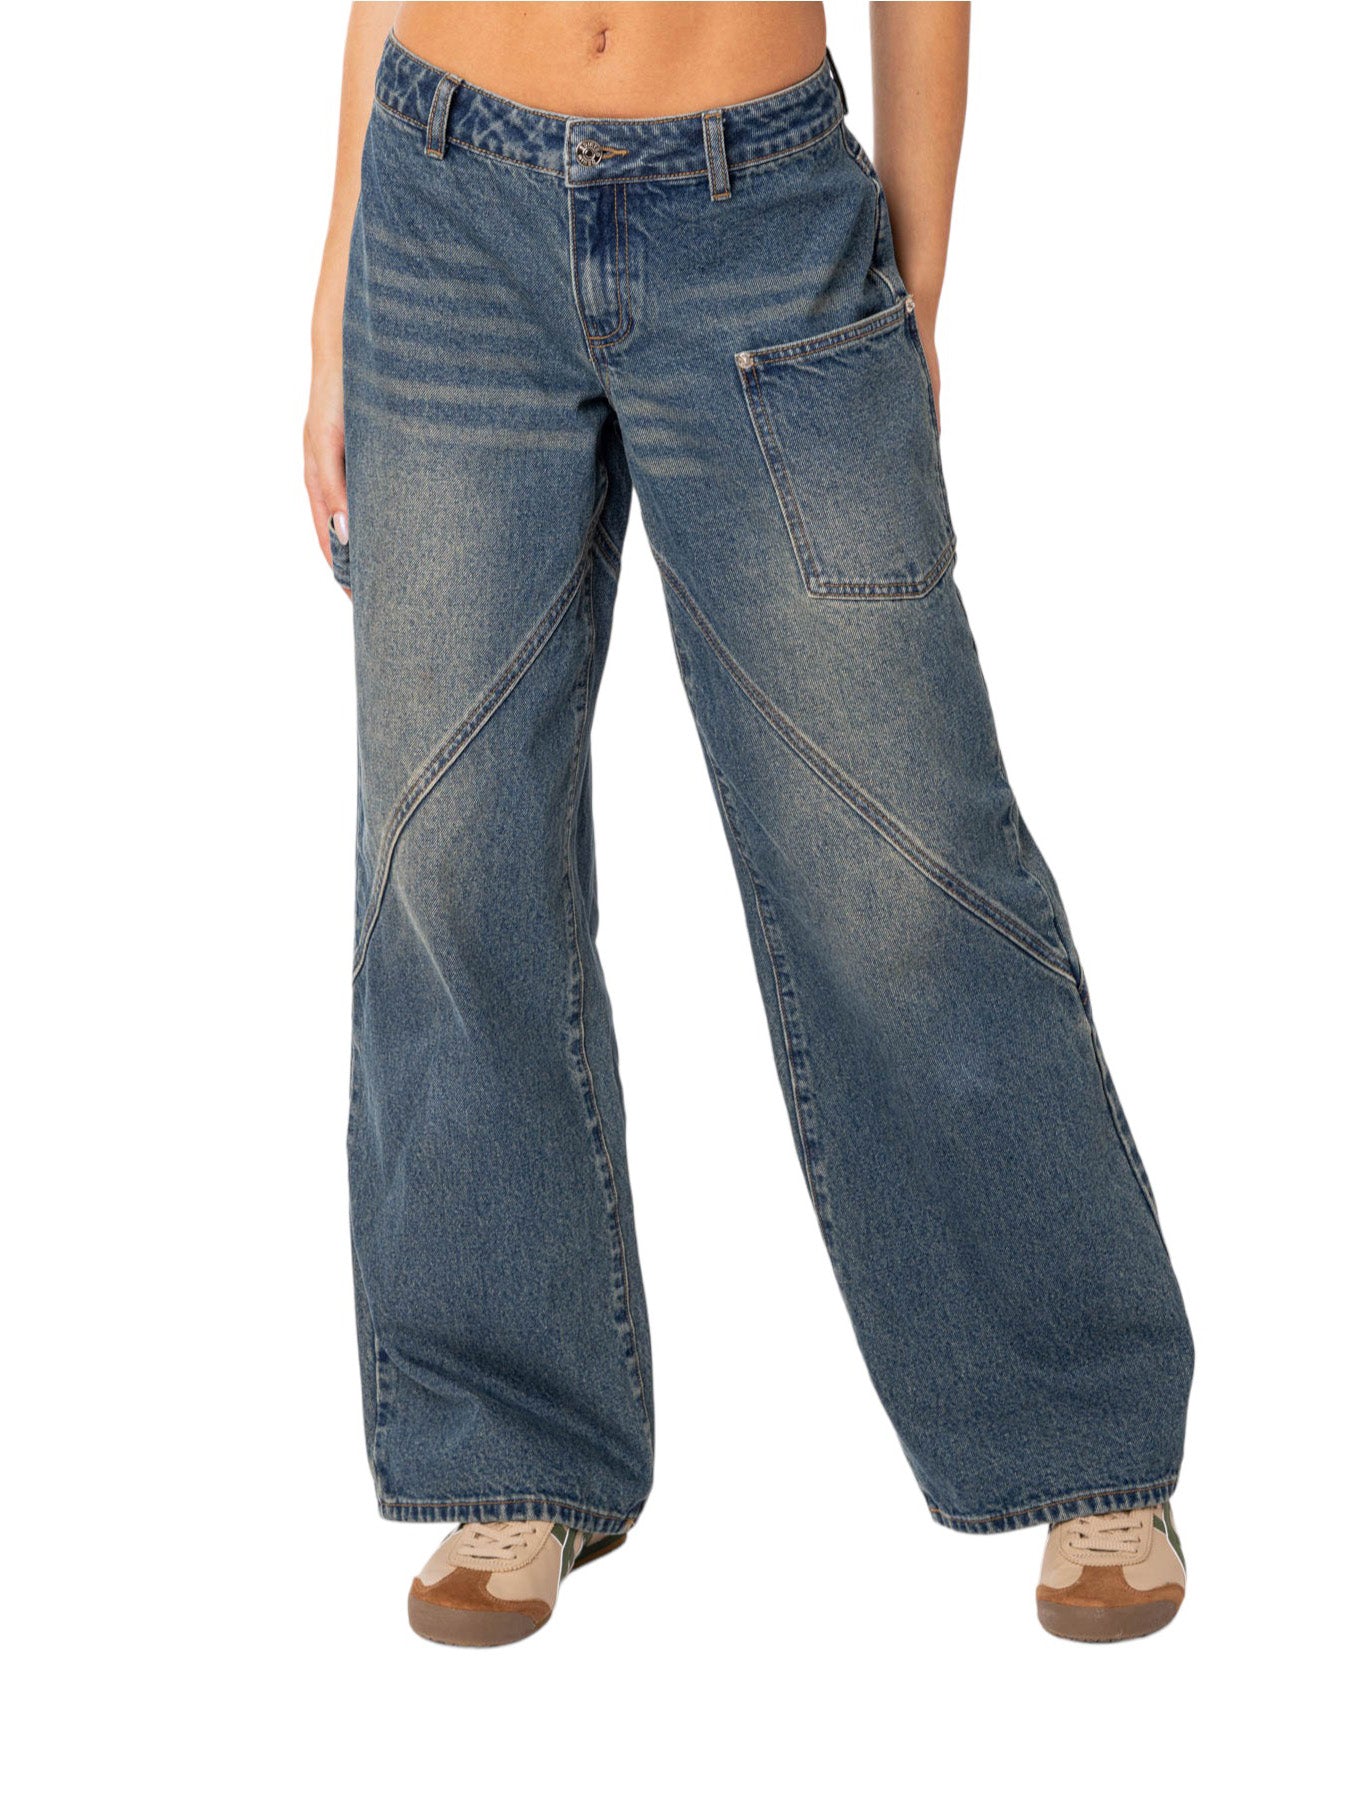 ג'ינס SERENA רחב- Edikted|אדיקטד